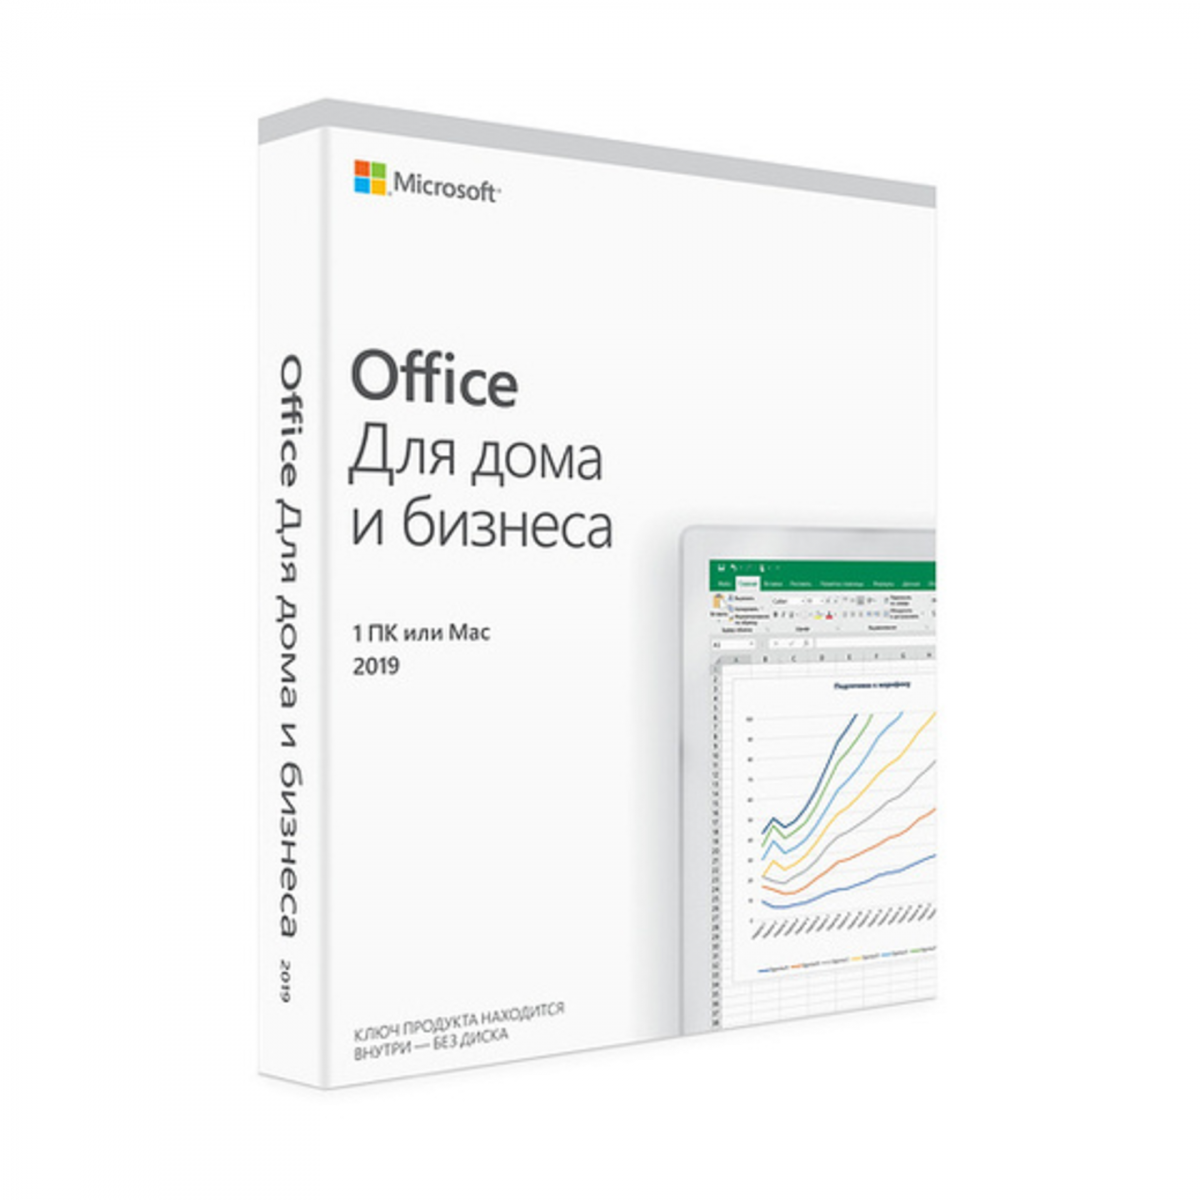 Офисное приложение Microsoft Office для дома и бизнеса 2019 (BOX)